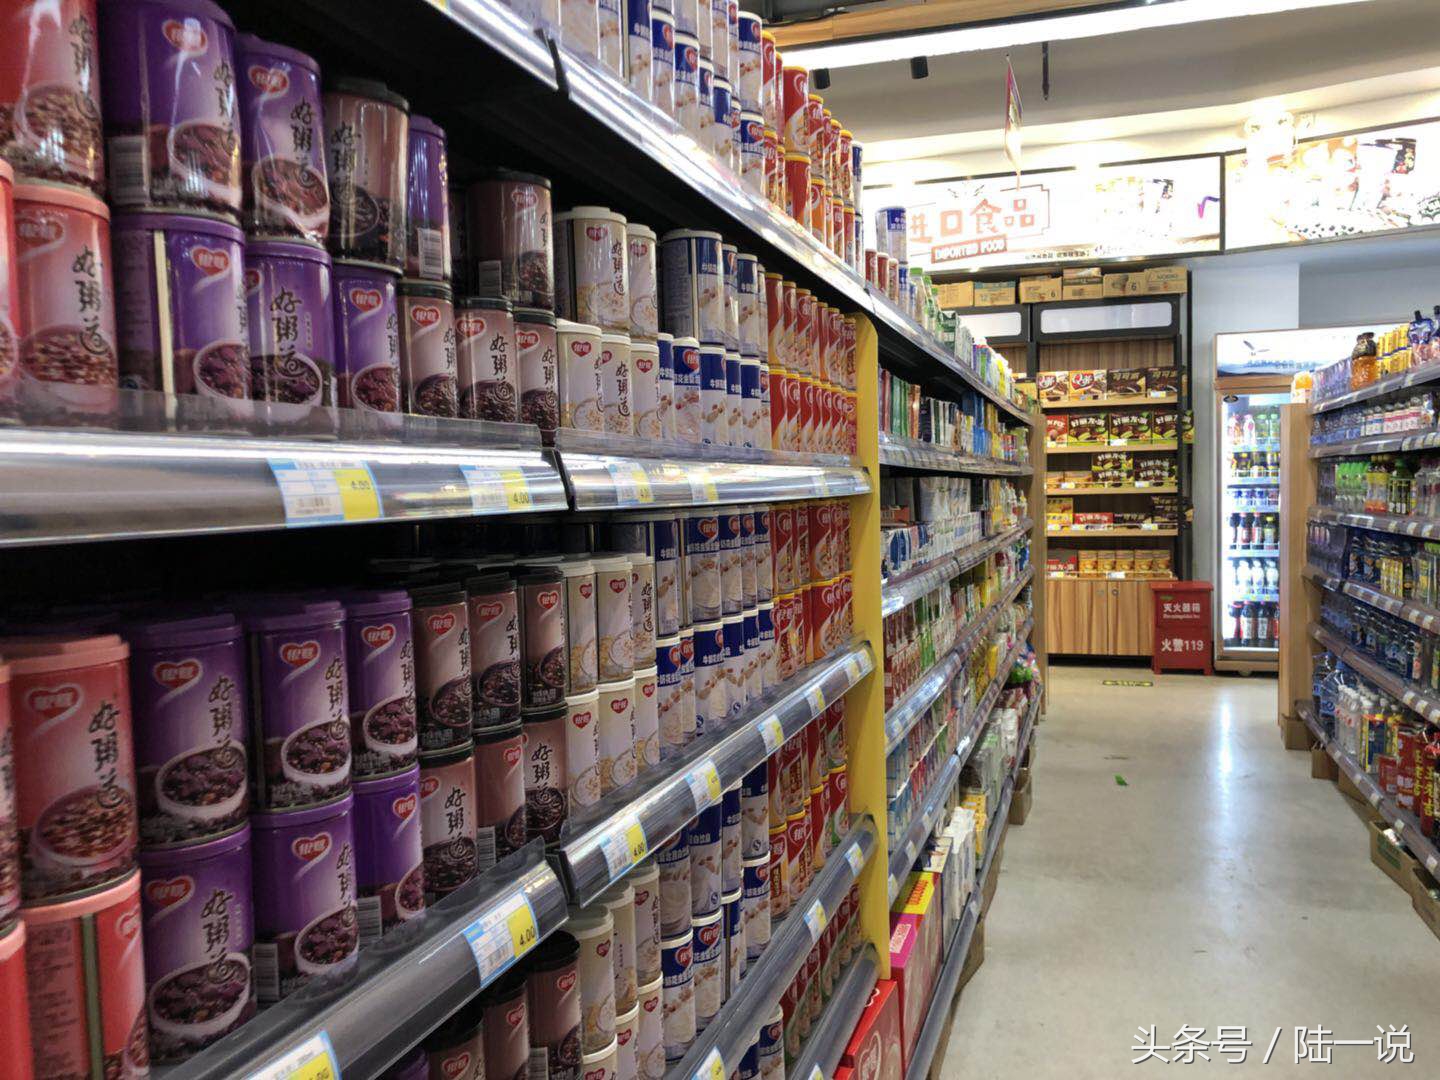 大学开超市,一天租金人工近万元,水果酸奶一斤